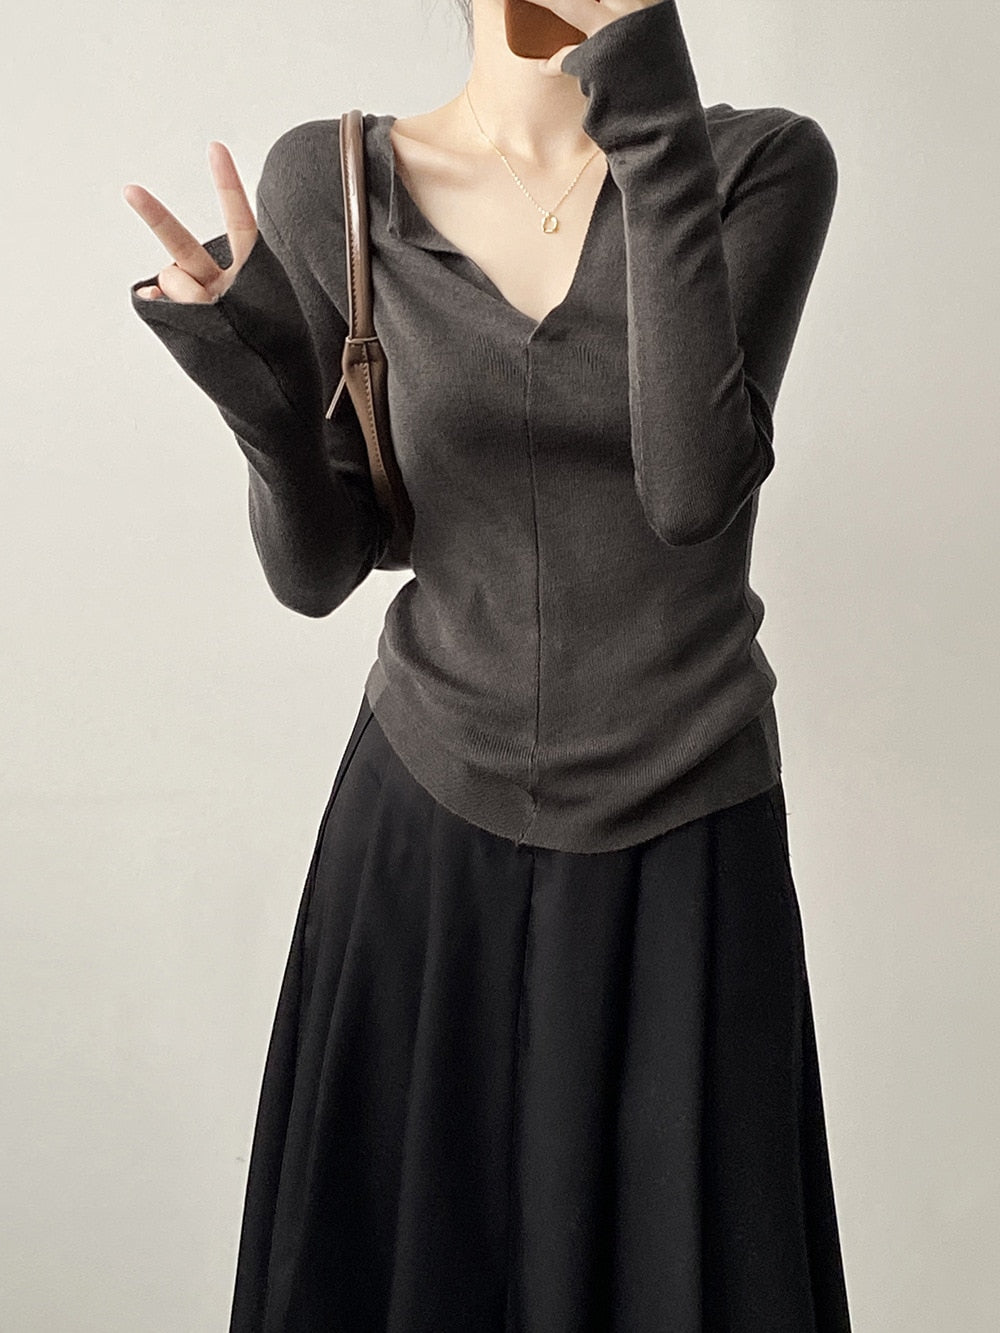 [Korean Style] Solid V-Neck Slim Fit Fine Knit Tops